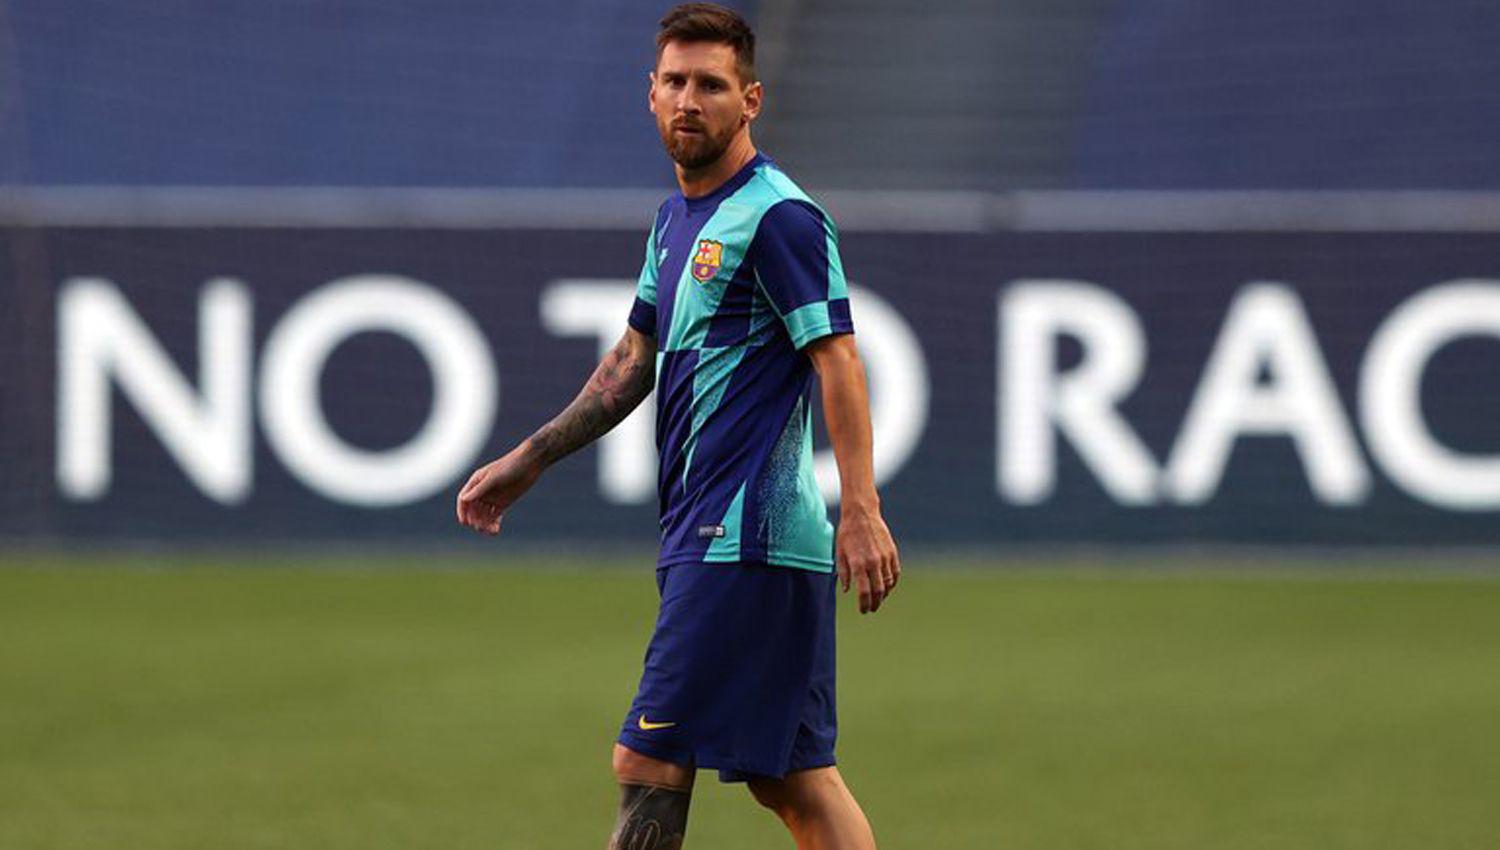 Inminente anuncio de Lionel Messi- confirmariacutea su continuidad en Barcelona